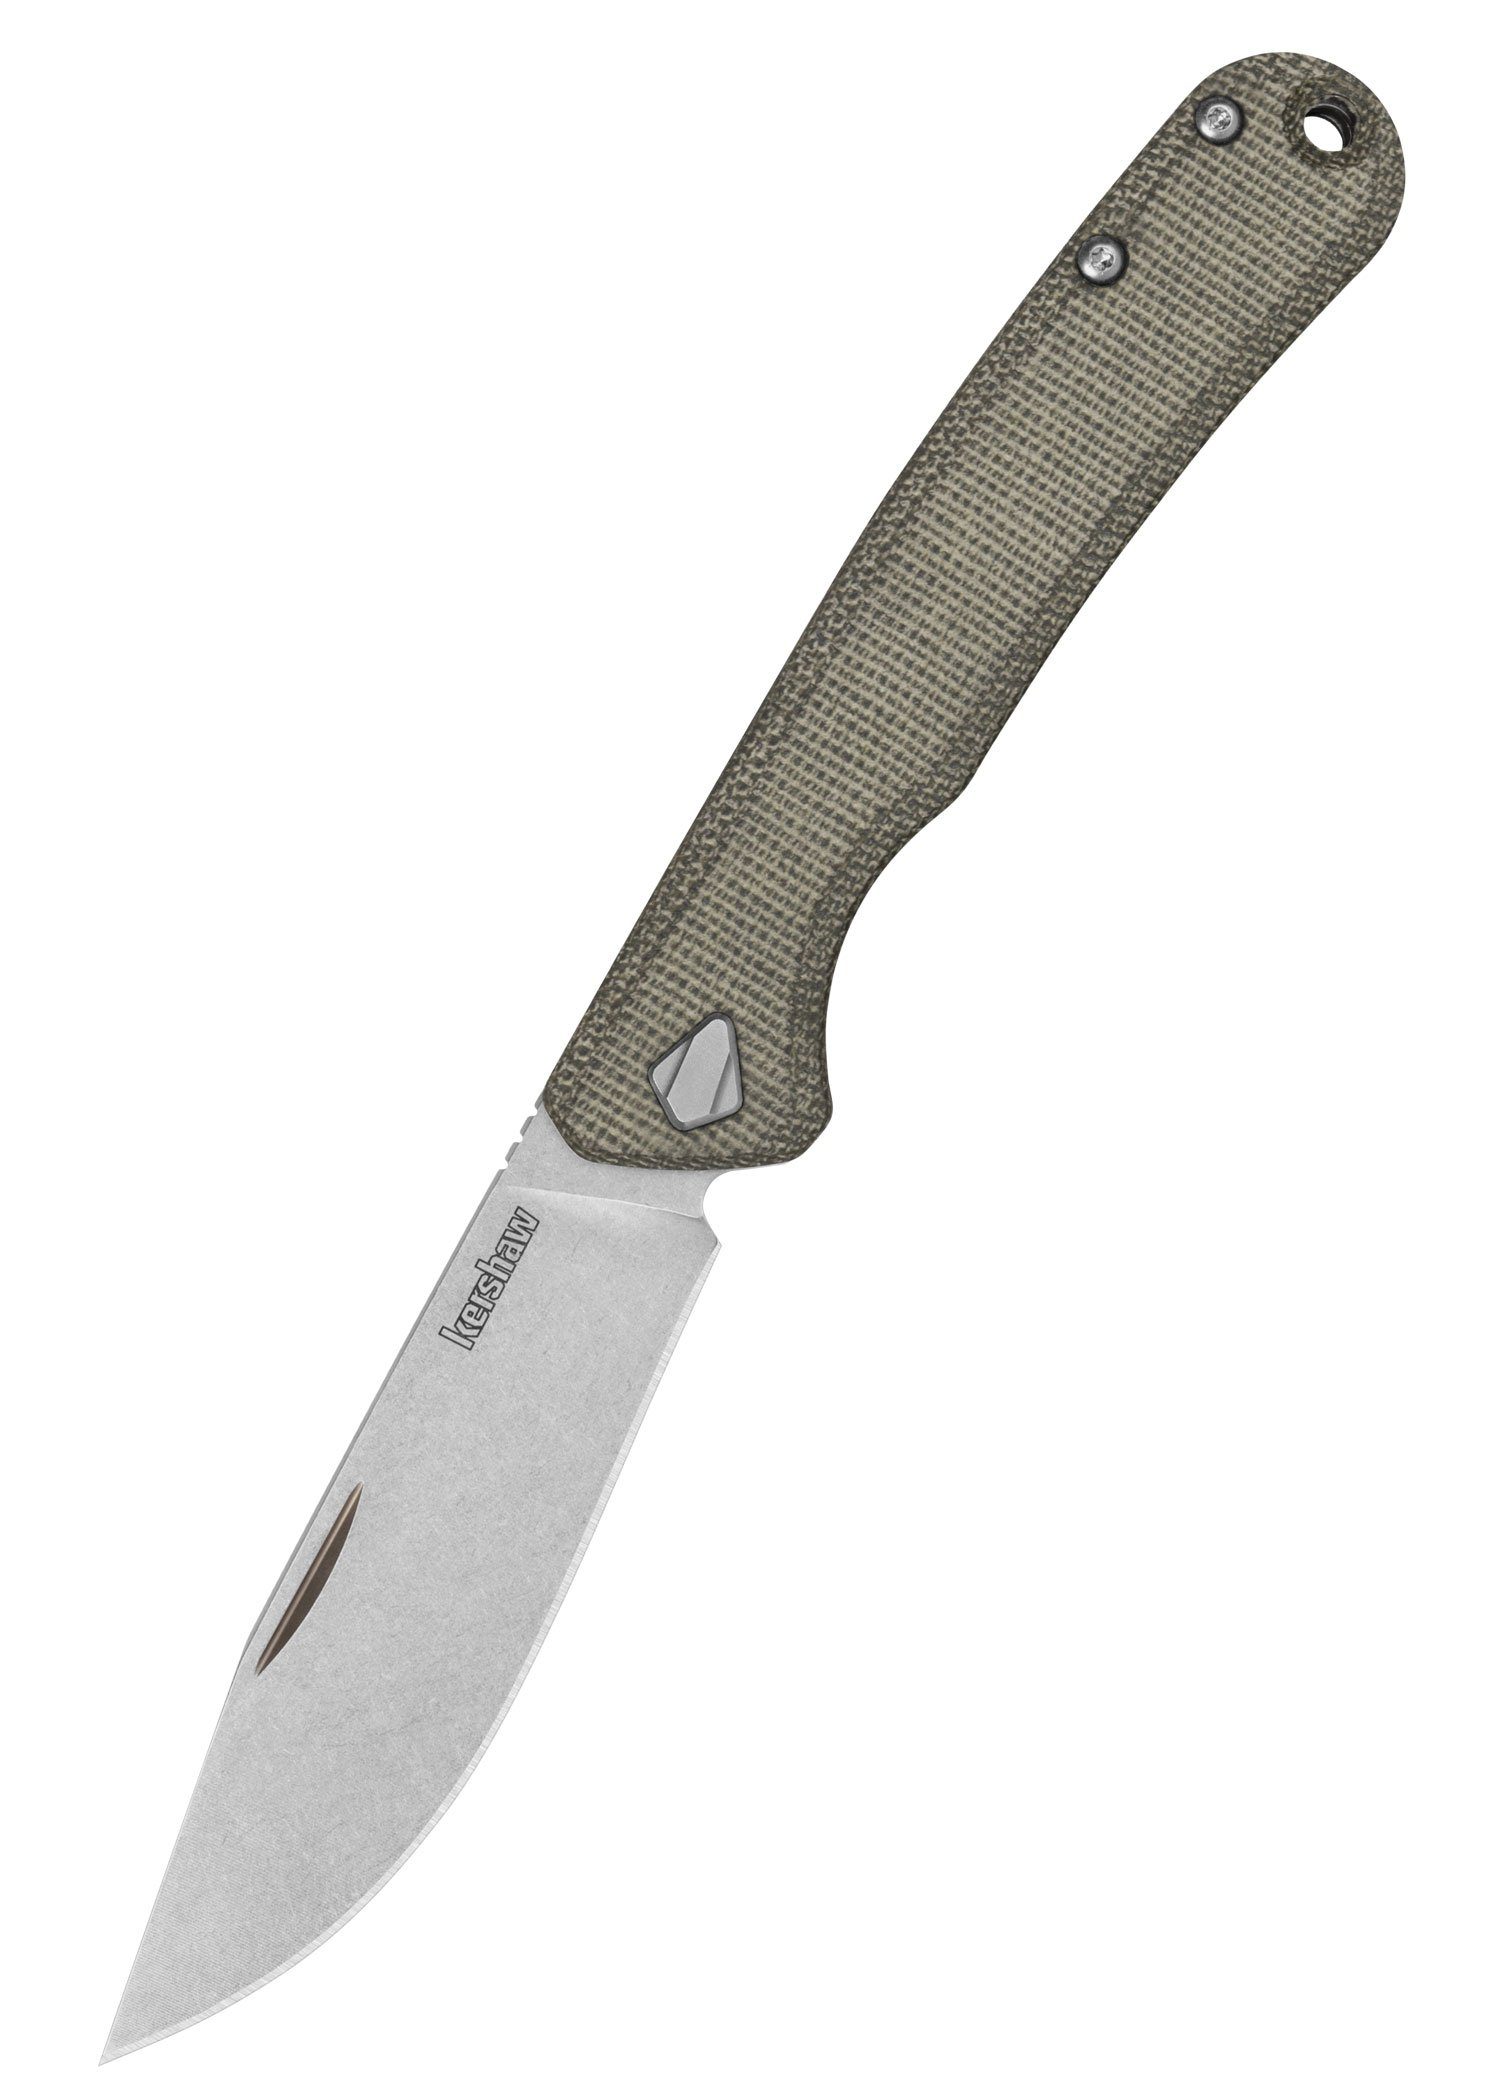 Kershaw - Taschenmesser CPM154 Pulverstahl Kershaw Knives Federalist Tachenmesser Slipjoint mit